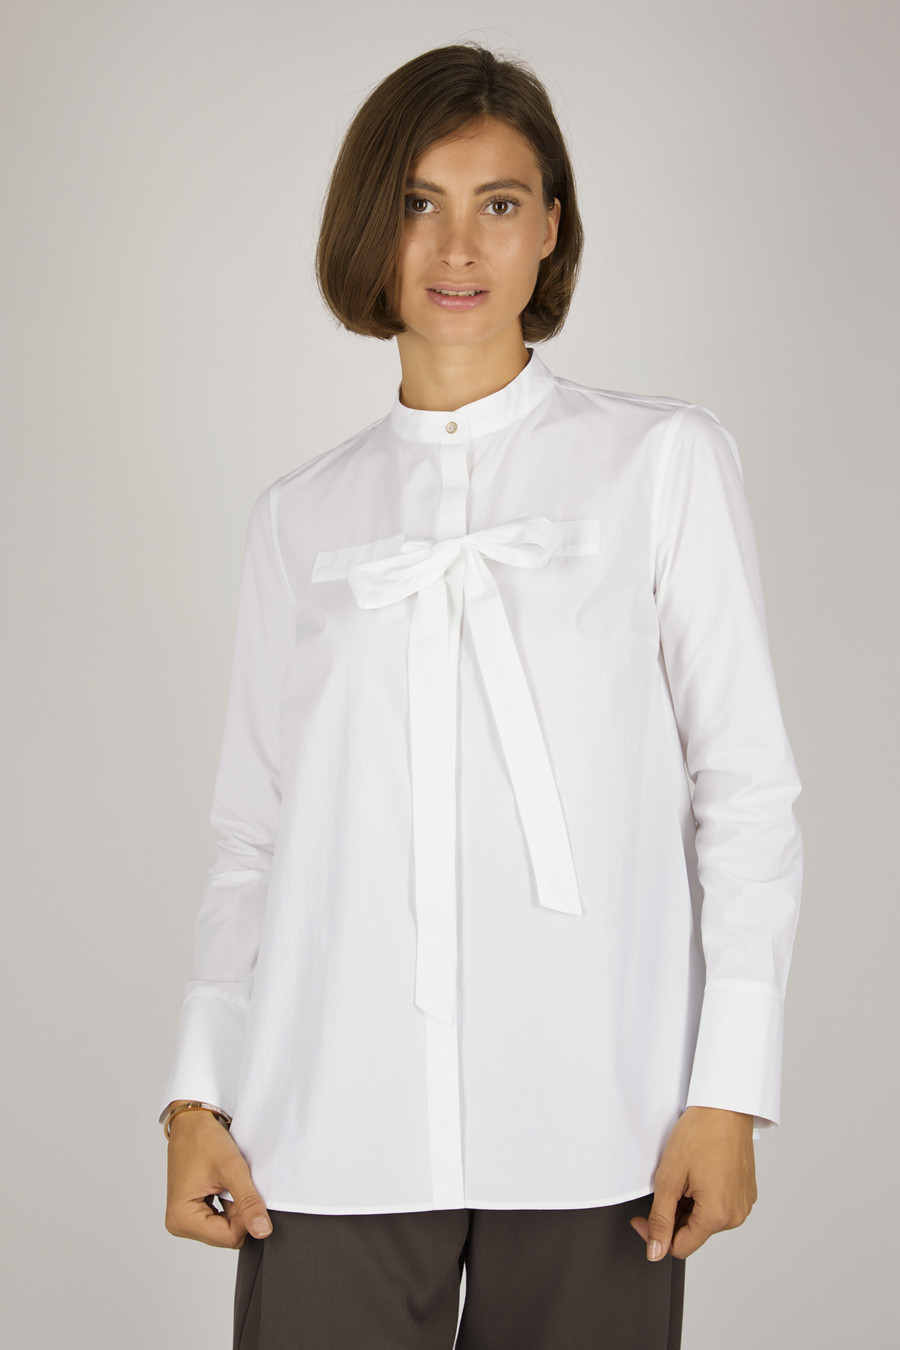 EVE – Bluse mit Stehkragen und Bindeelement – Farbe: White